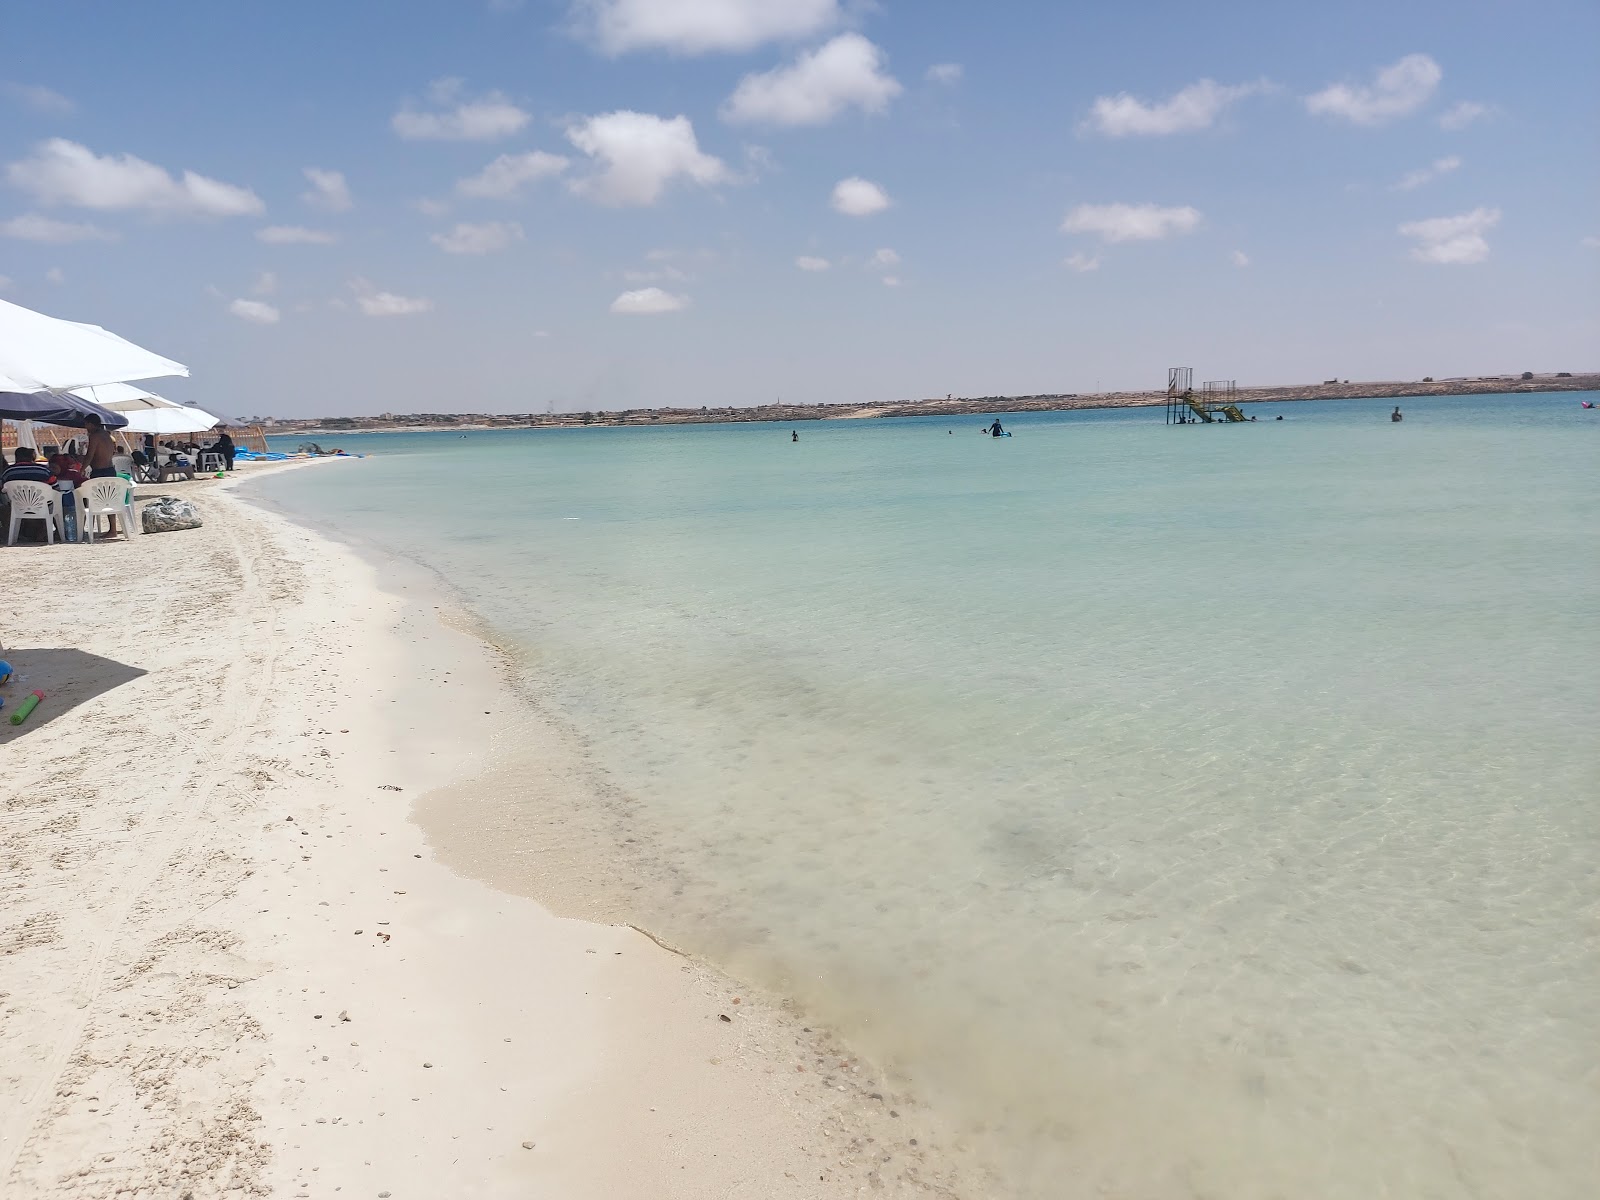 Zdjęcie Eagles Resort in Cleopatra Beach z powierzchnią turkusowa czysta woda